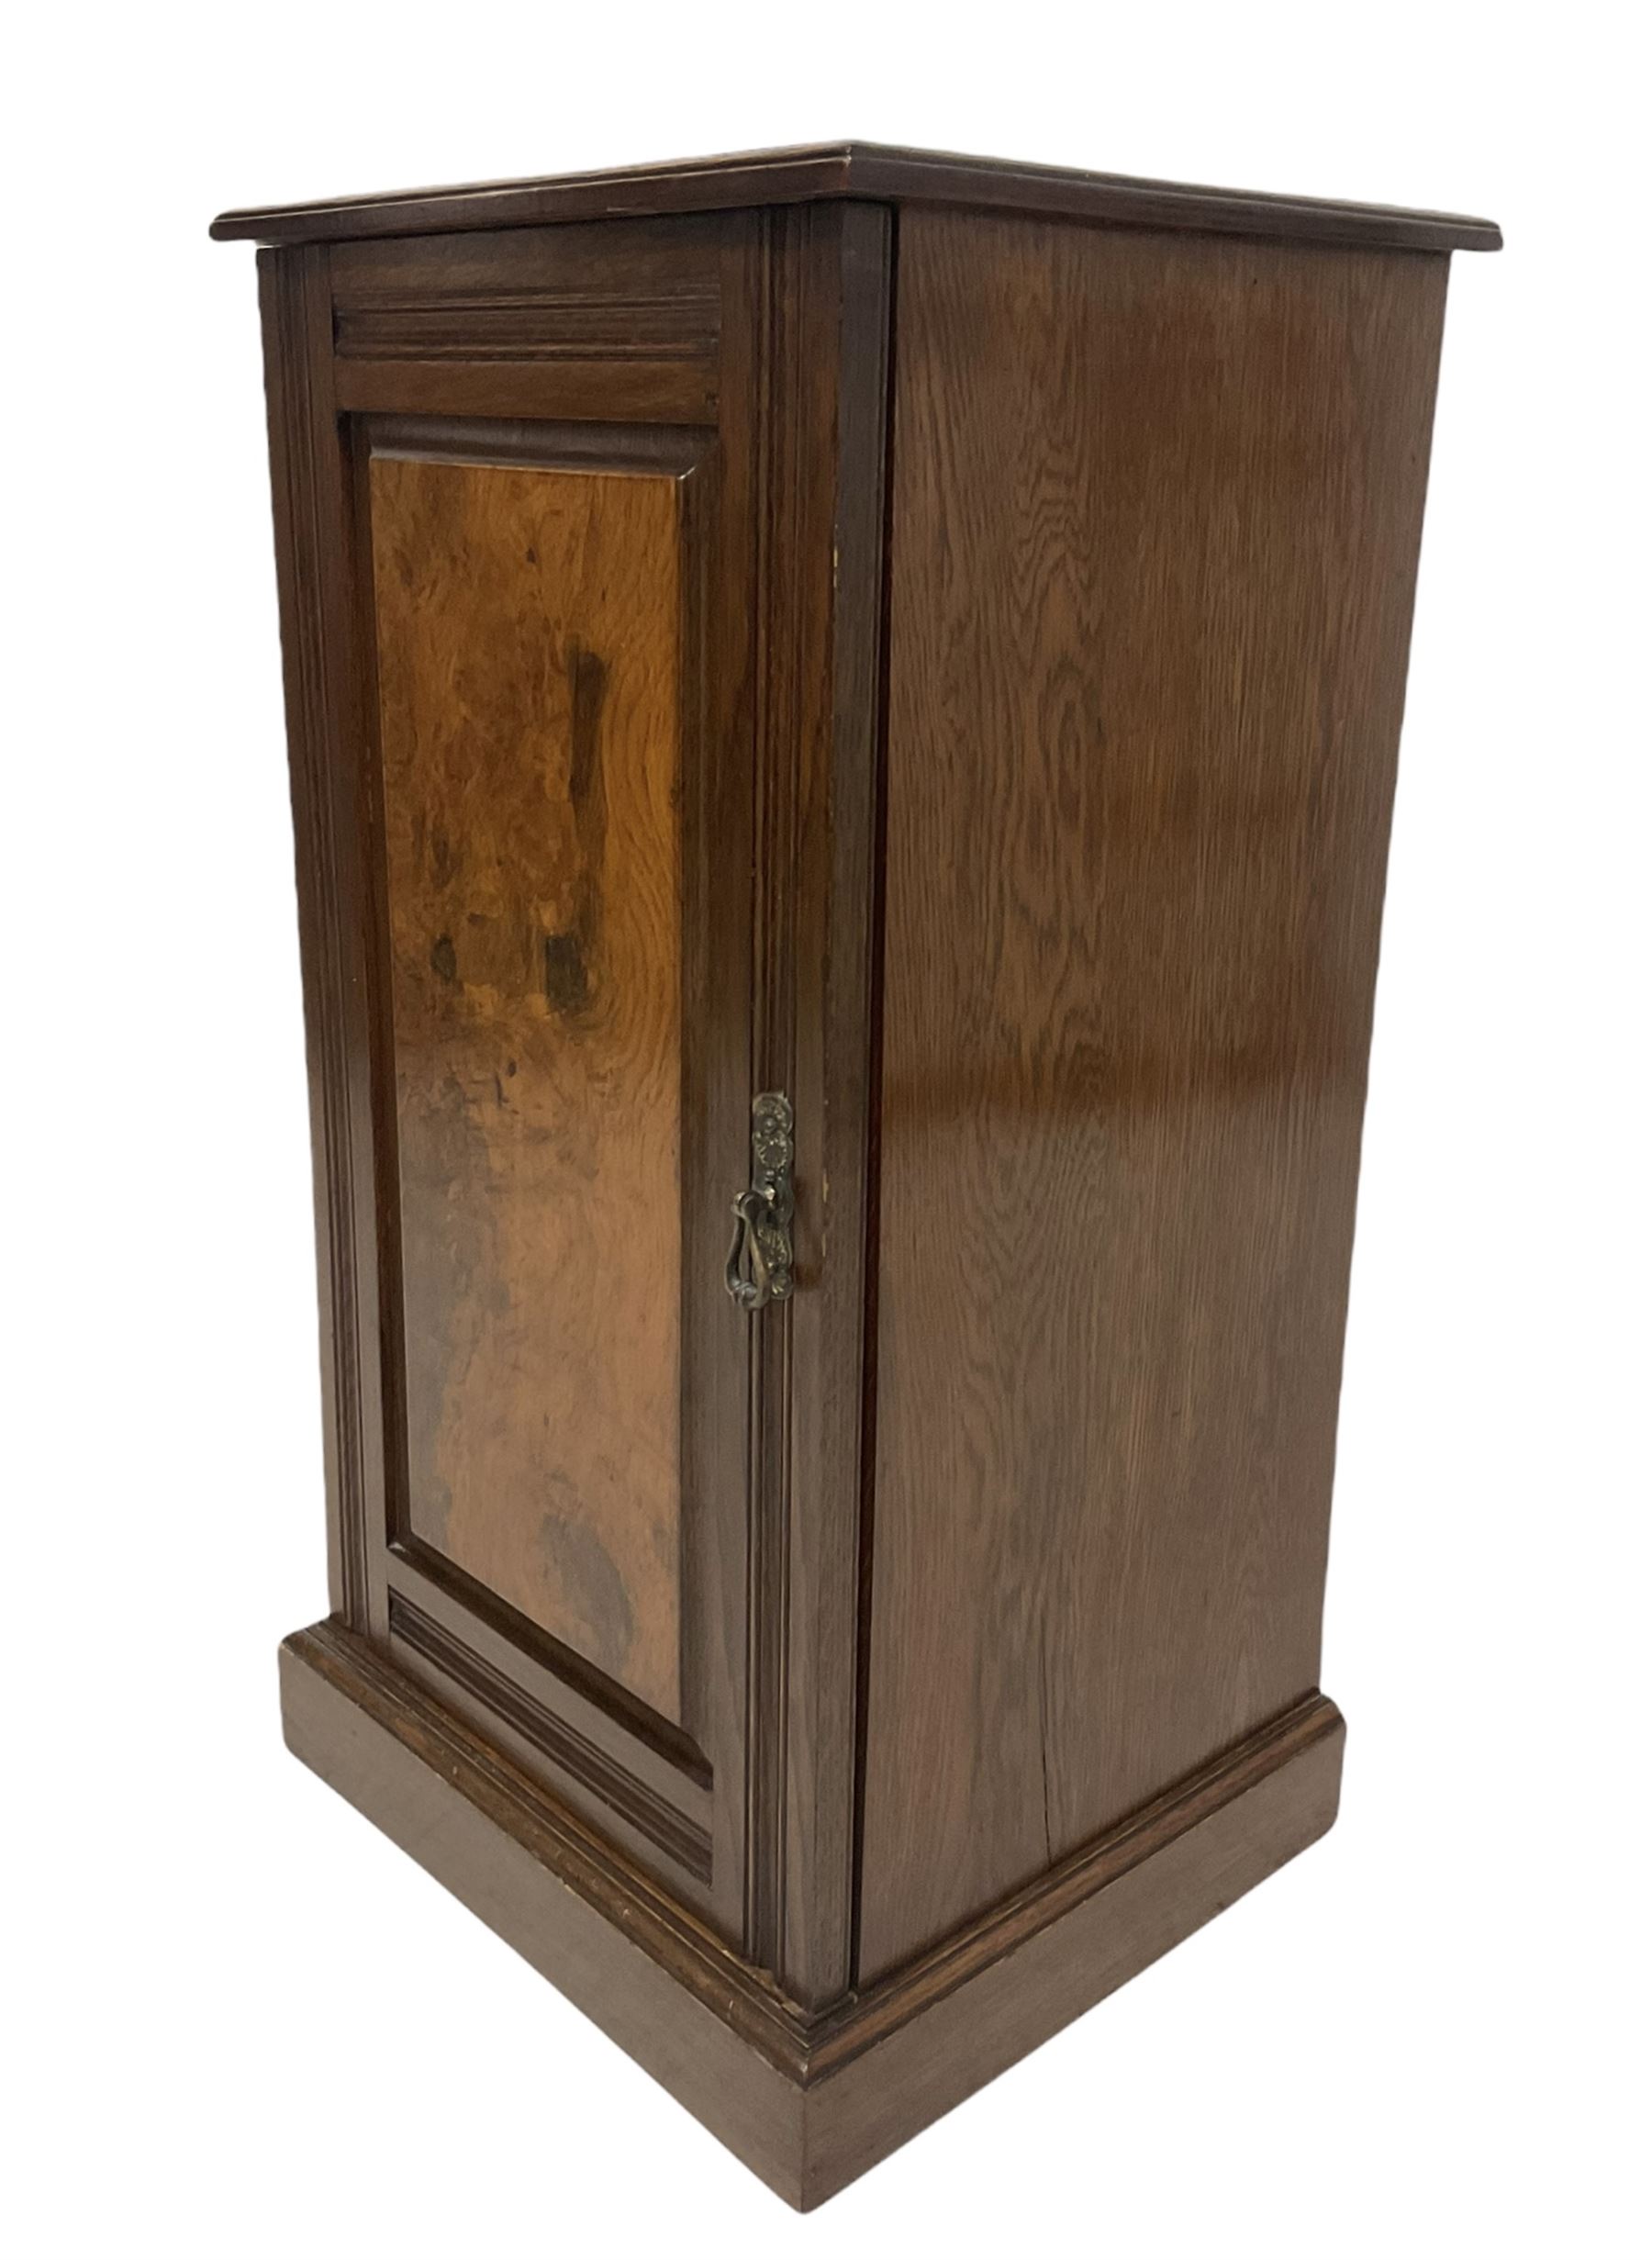 Early 20th century oak bedside cupboard